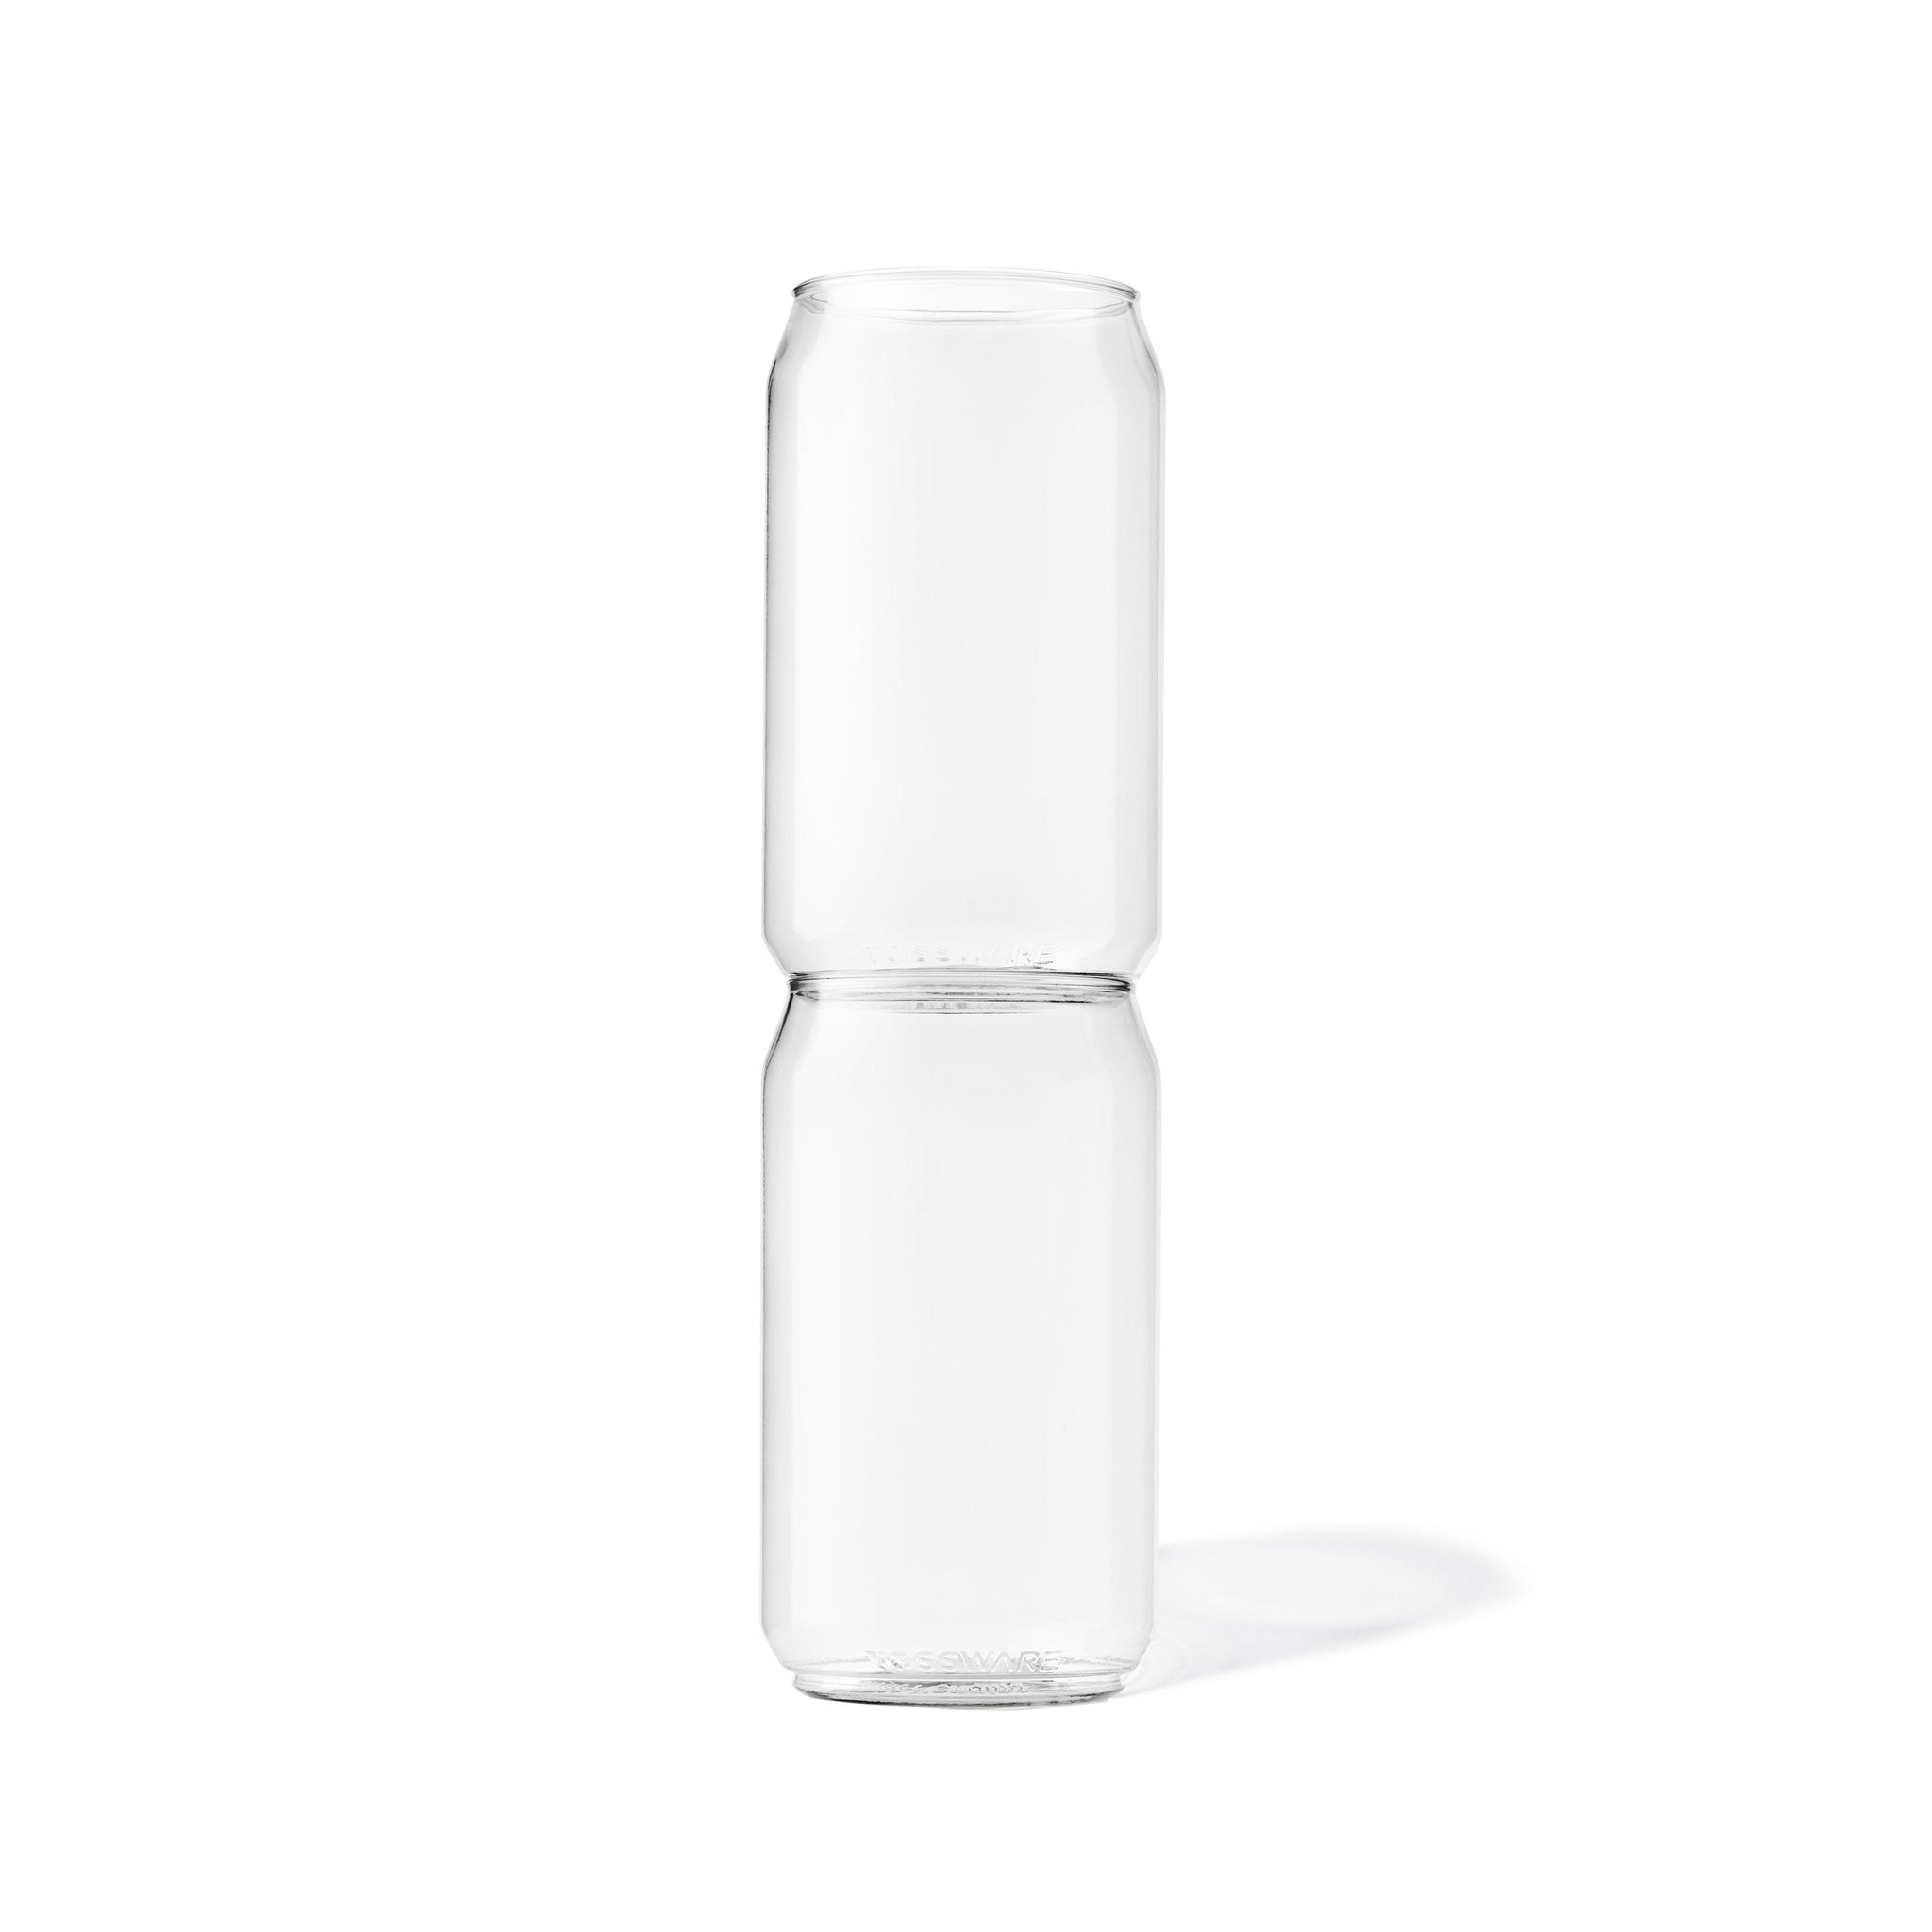 TOSSWARE Clear Plastic Decanter Plus Aerator, 28 oz, 1 Count